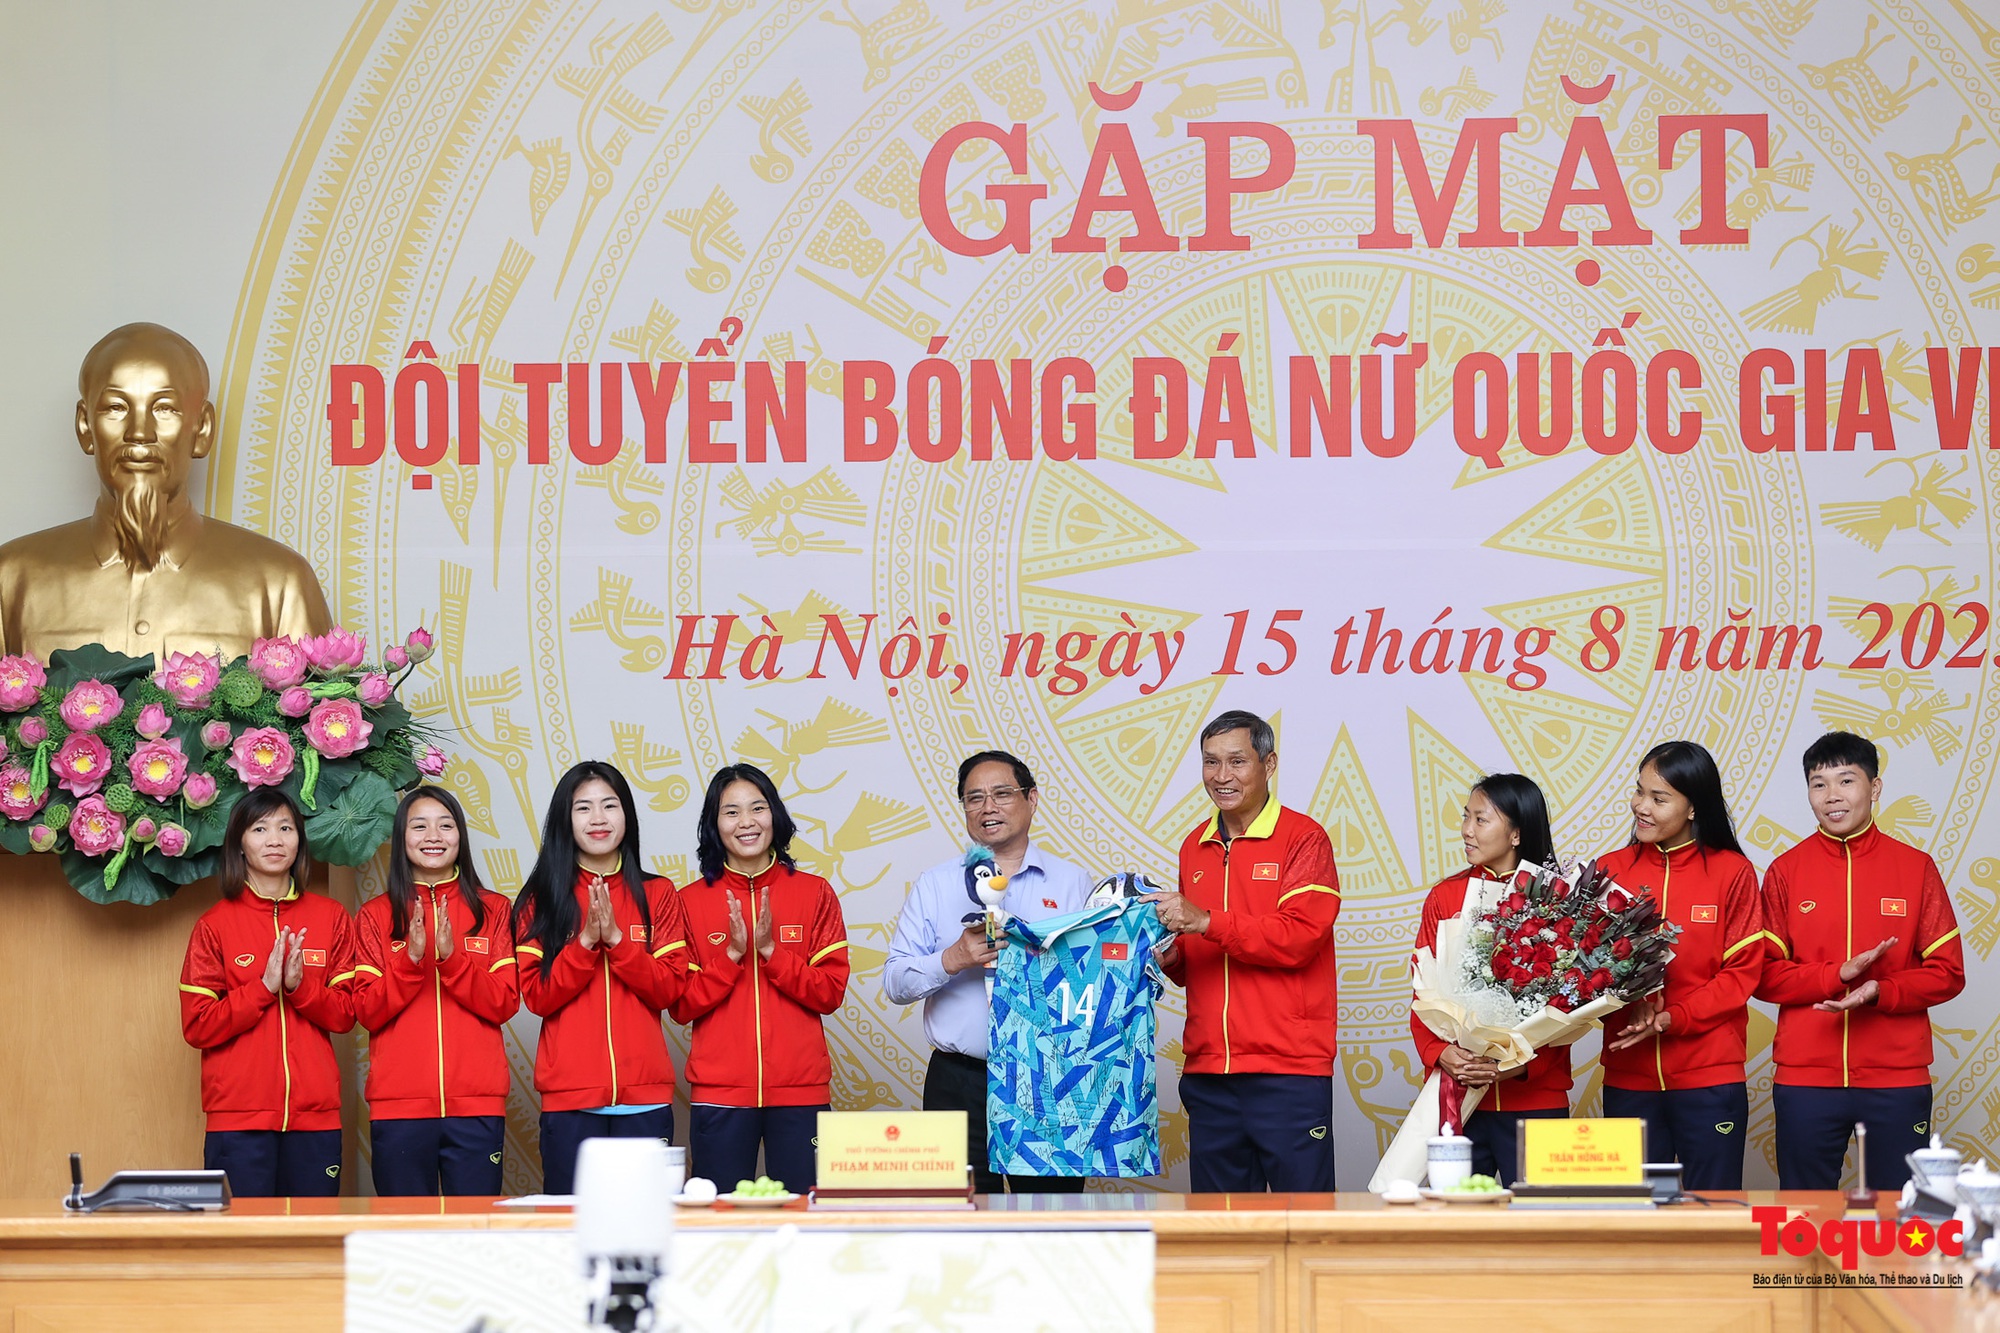 Chùm ảnh: Thủ tướng Phạm Minh Chính gặp mặt, biểu dương Đội tuyển bóng đá nữ Quốc gia Việt Nam - Ảnh 10.